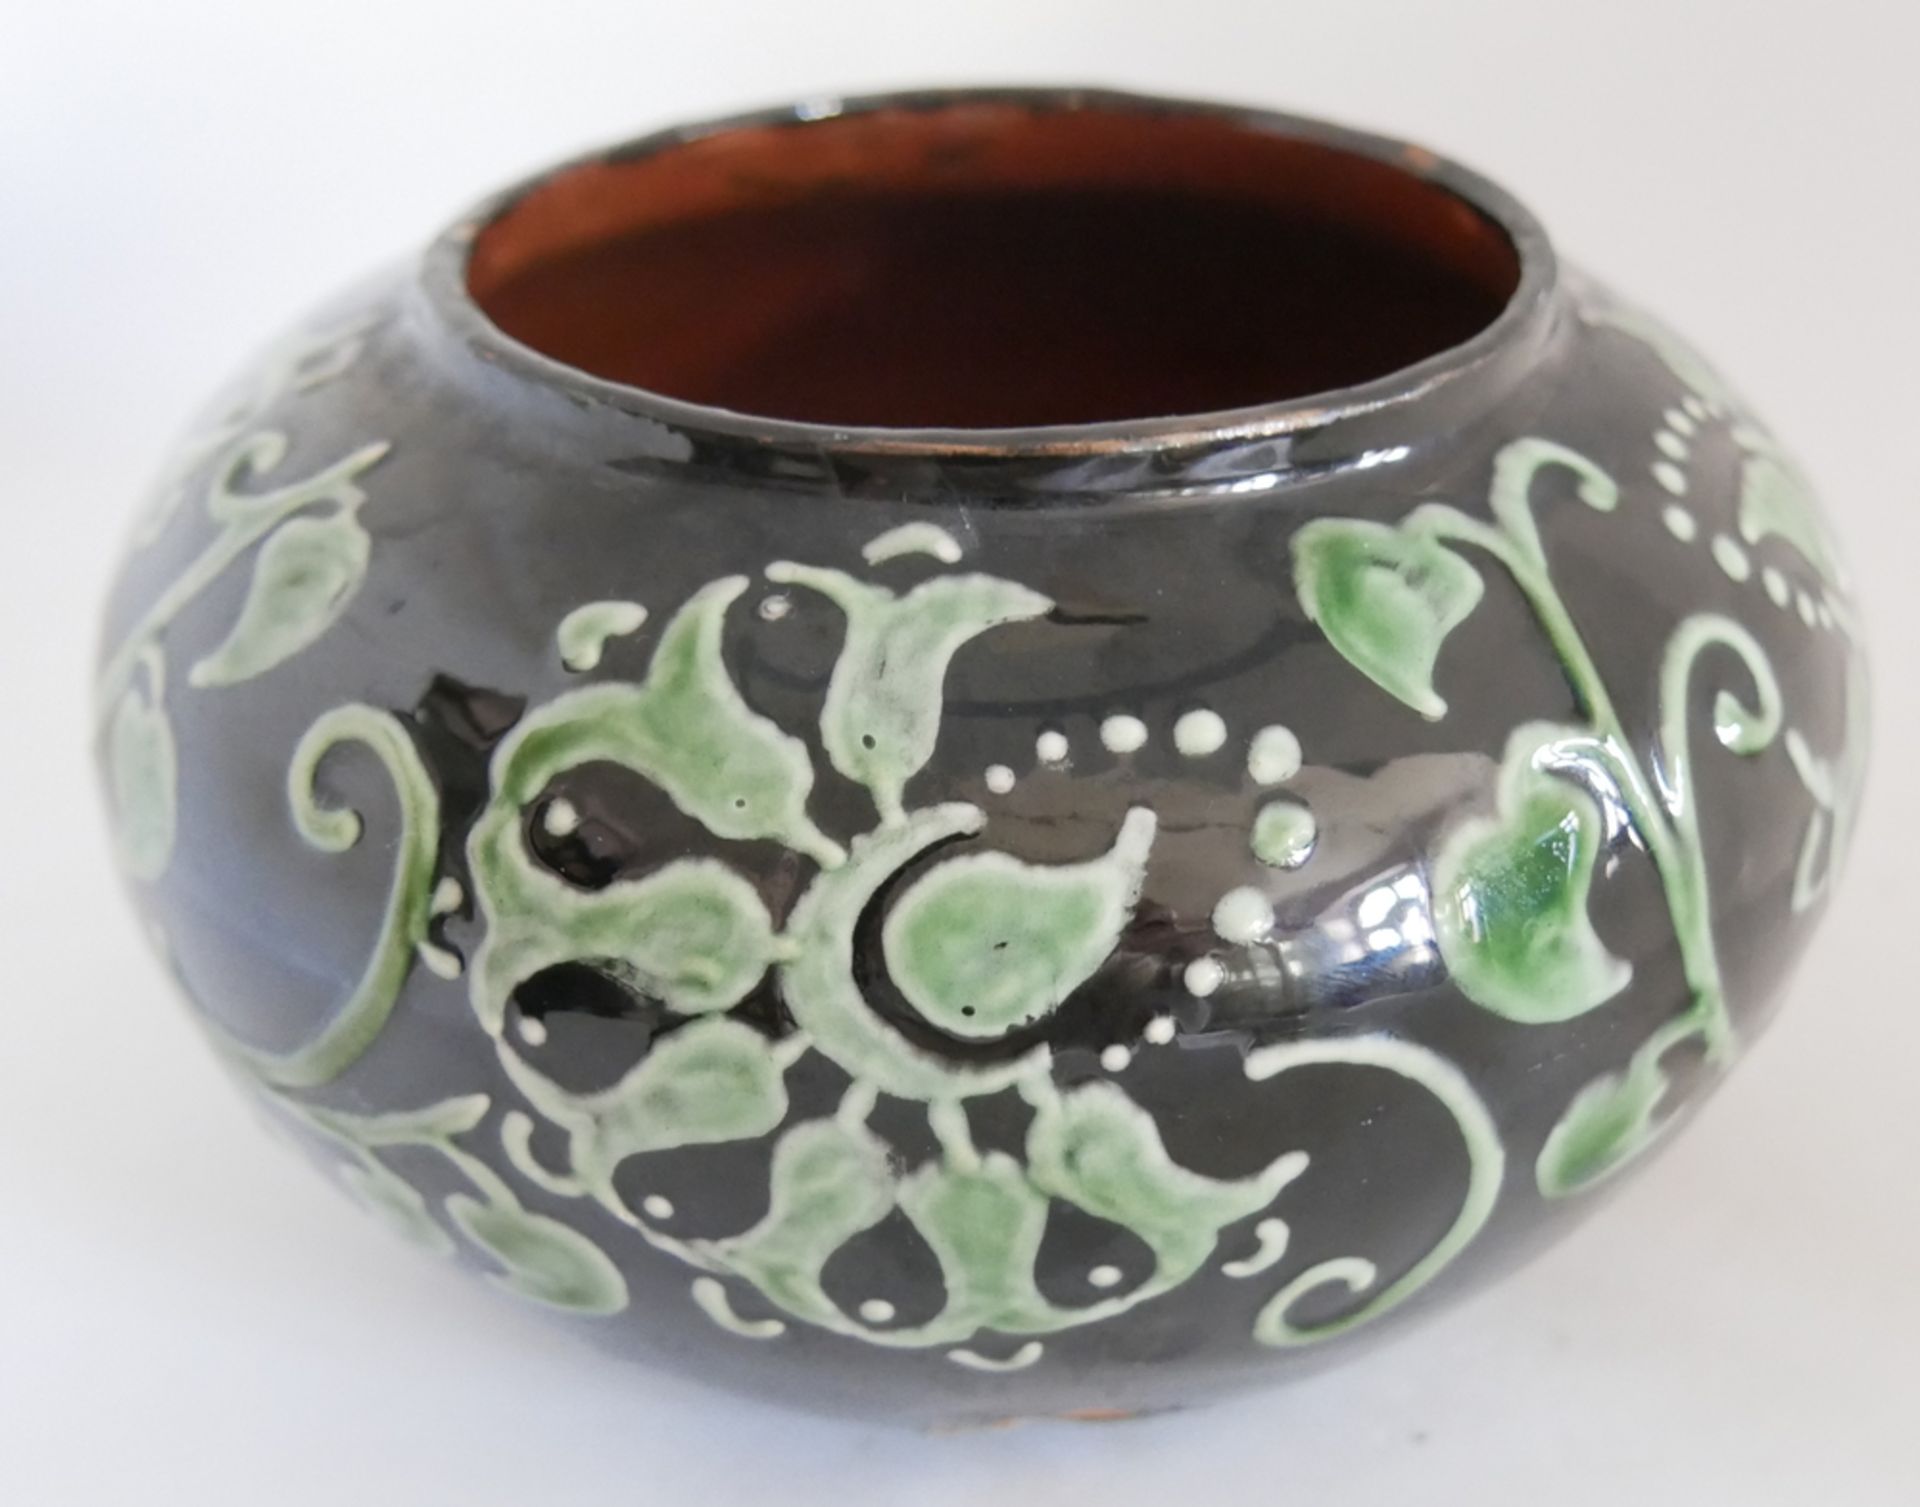 Keramik Vase Kandern am Boden Pressmarke KK im Viereck, Modellnr. 825, schwarz weiße Glasur. - Image 2 of 3